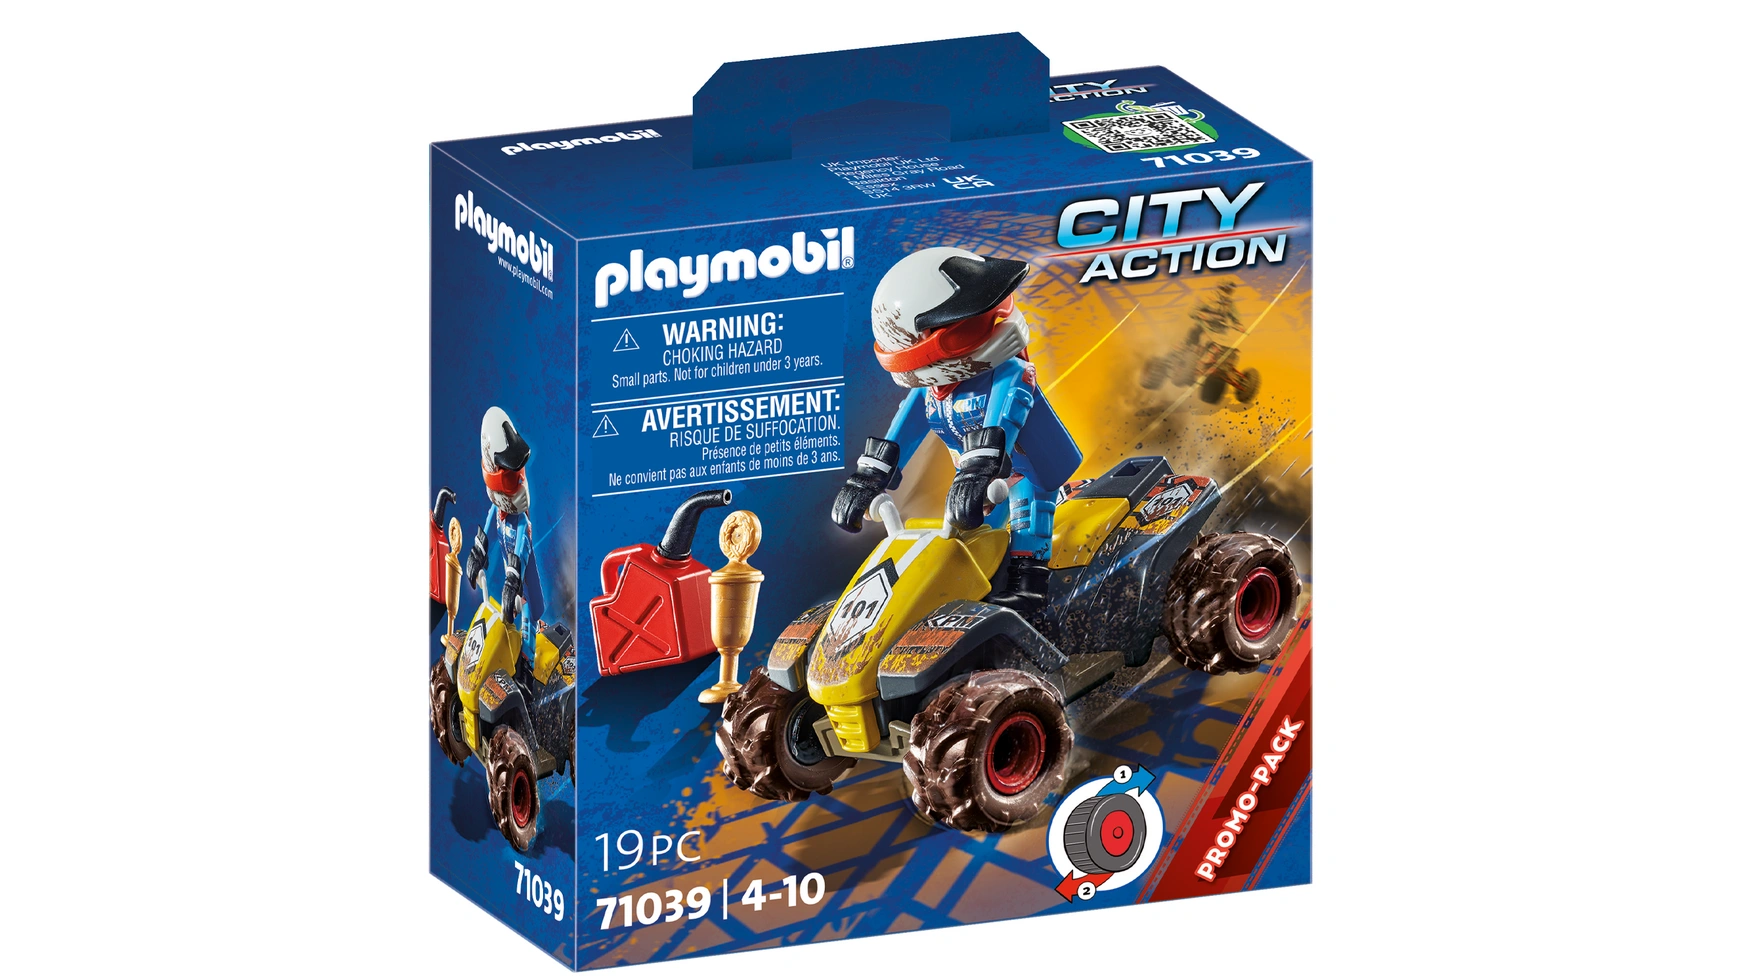 City action квадроцикл для бездорожья Playmobil